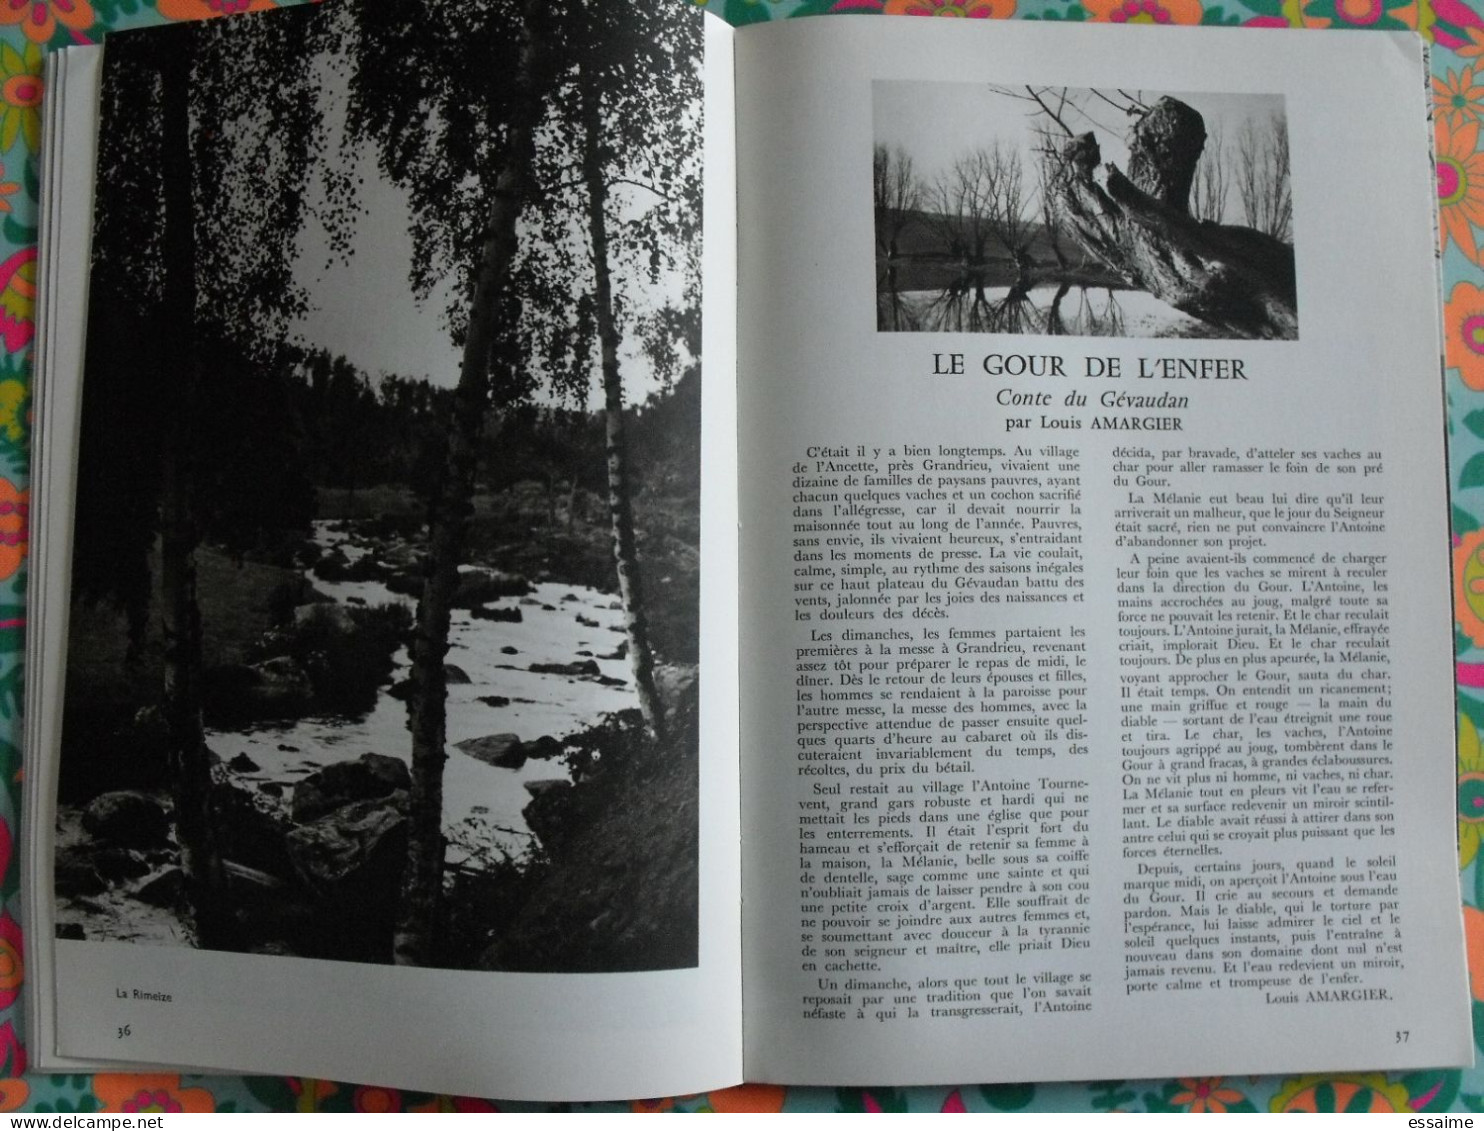 La France à table n° 151. 1971. Lozère. mende langogne tarn aven armand dargilan chirac chanac bagnols. gastronomie